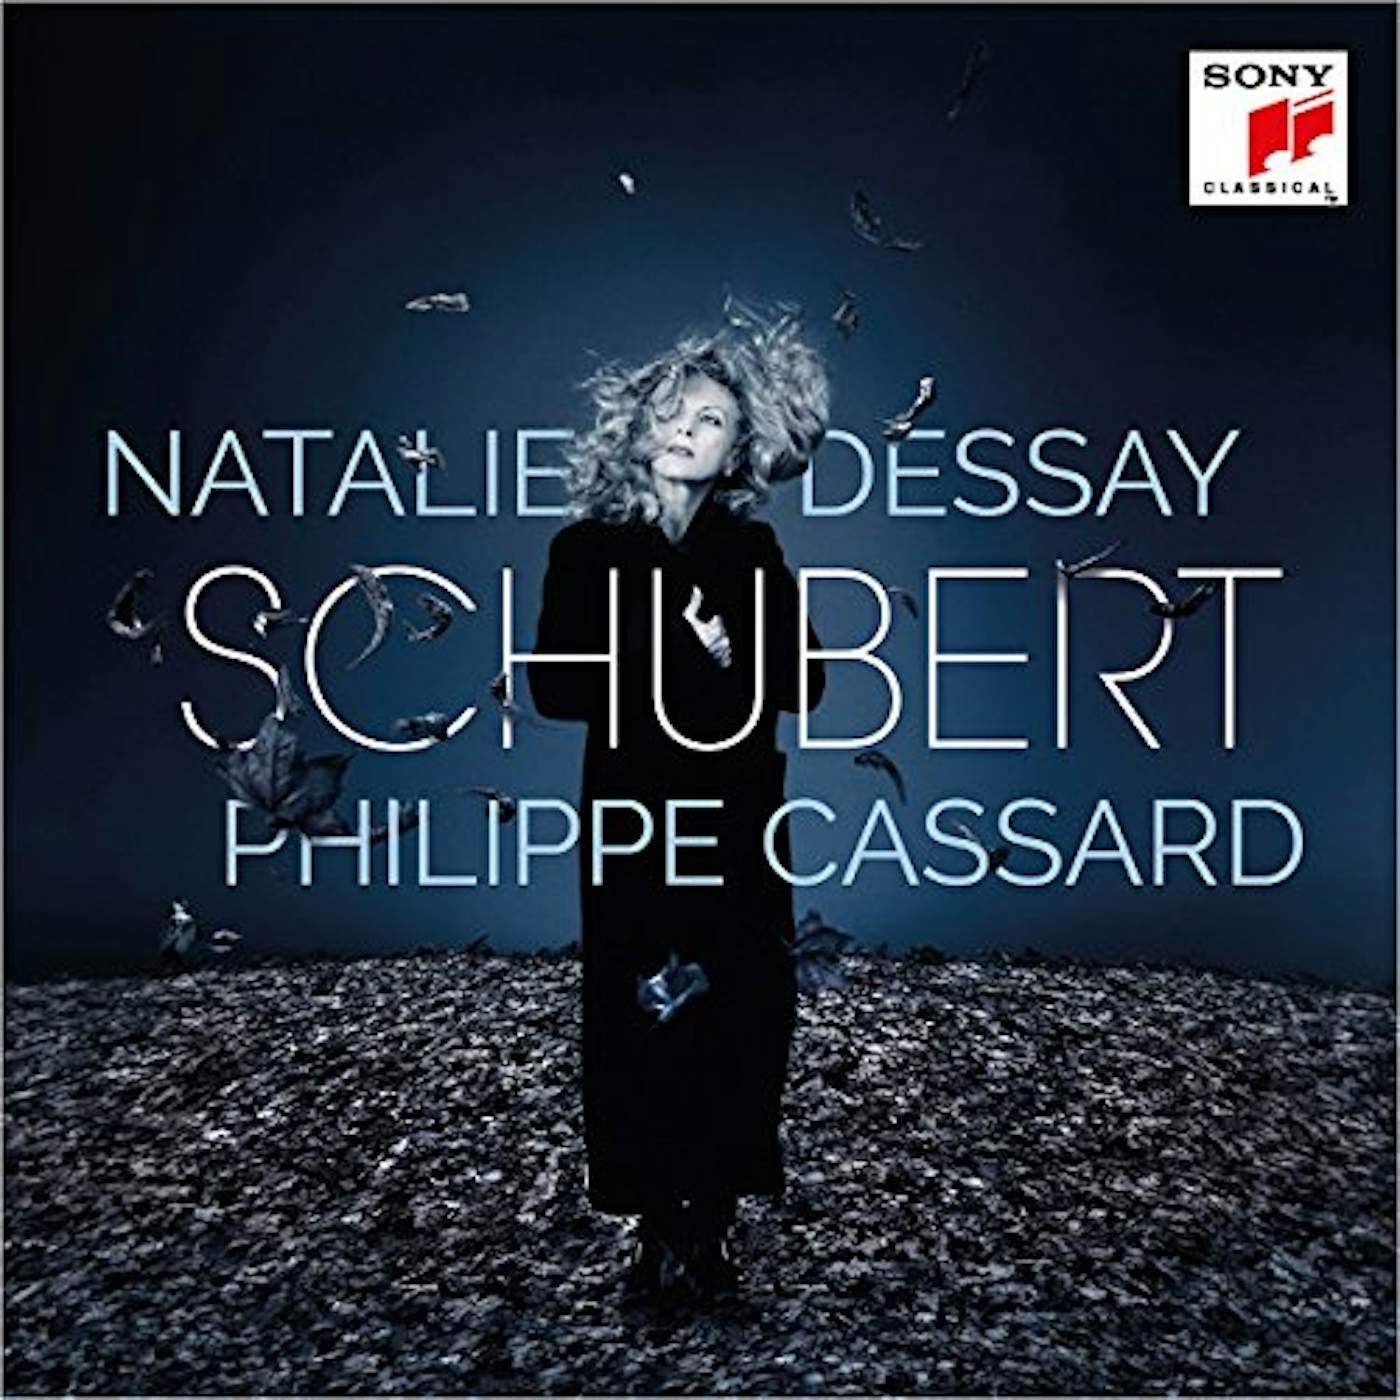 Natalie Dessay SCHUBERT CD